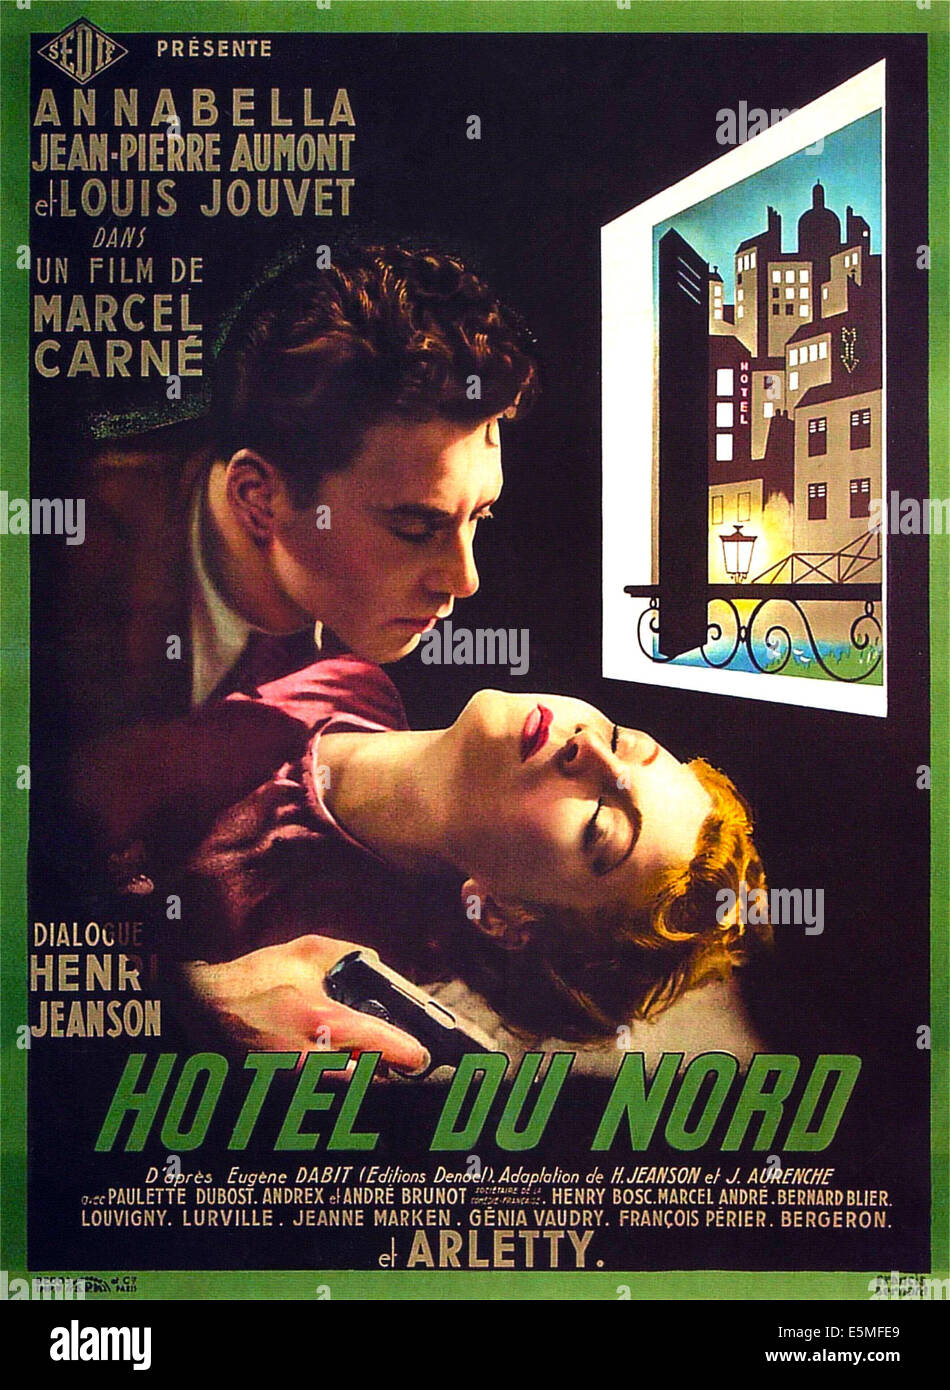 HOTEL DU NORD, französische Plakatkunst von oben: Jean-Pierre Aumont, Annabella, 1938 Stockfoto